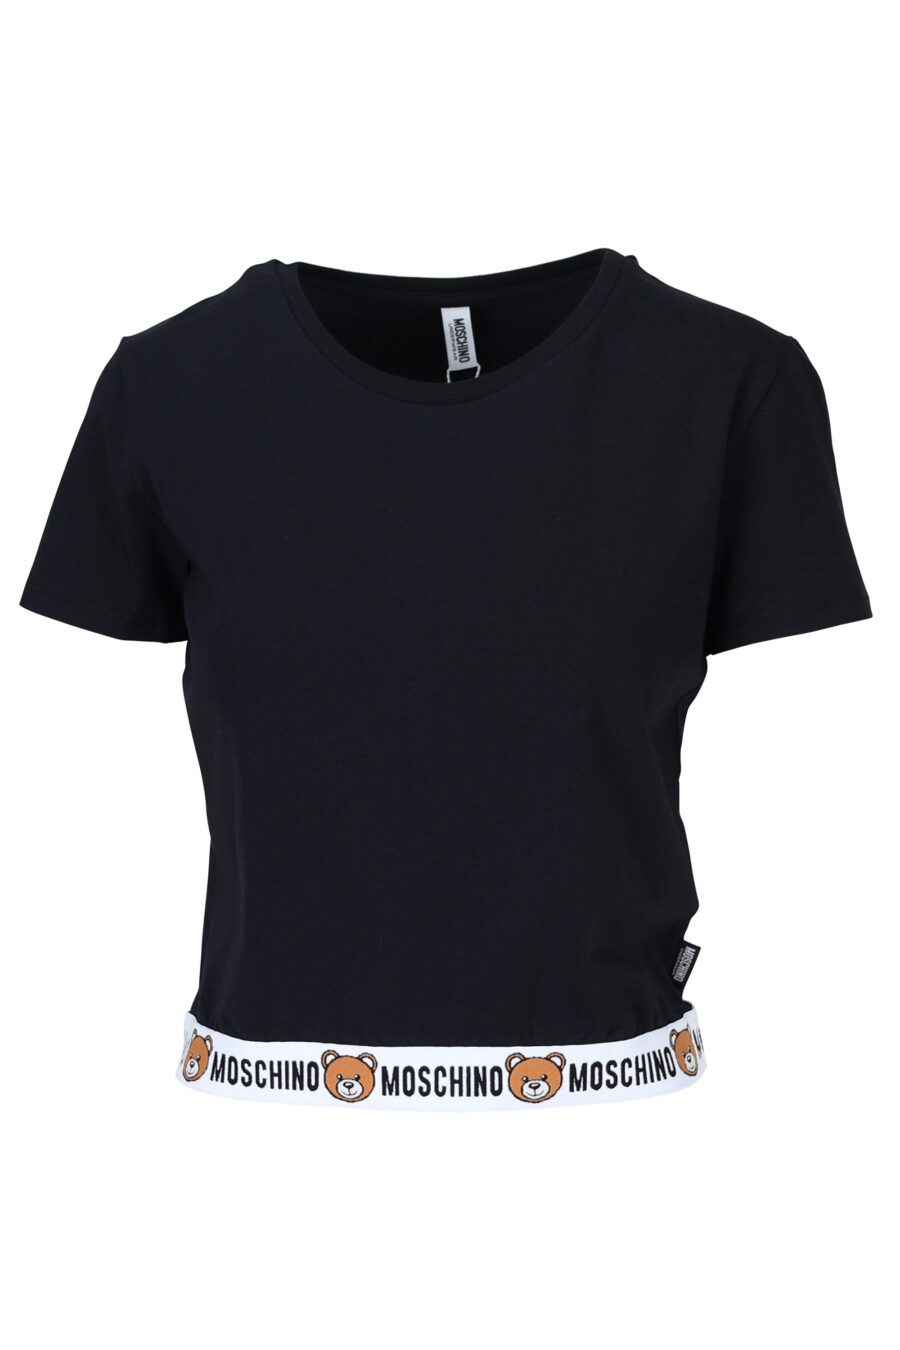 Schwarzes T-Shirt mit Bärenlogo "underbear" auf Bändchen - 667113034157